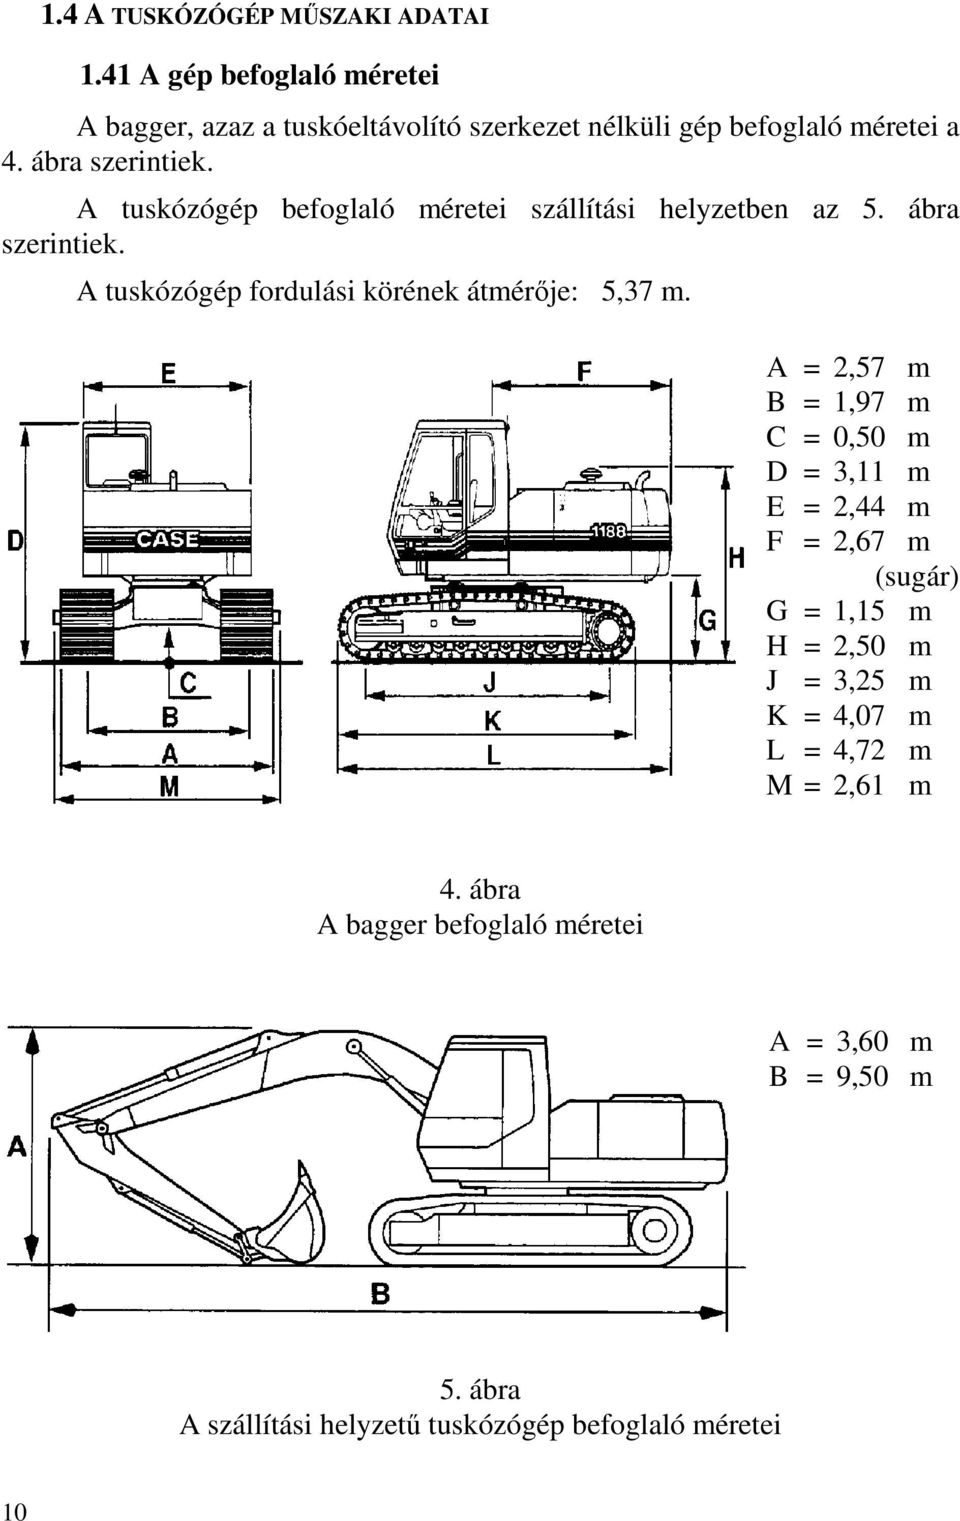 A tuskózógép befoglaló méretei szállítási helyzetben az 5. ábra szerintiek. A tuskózógép fordulási körének átmérője: 5,37 m.